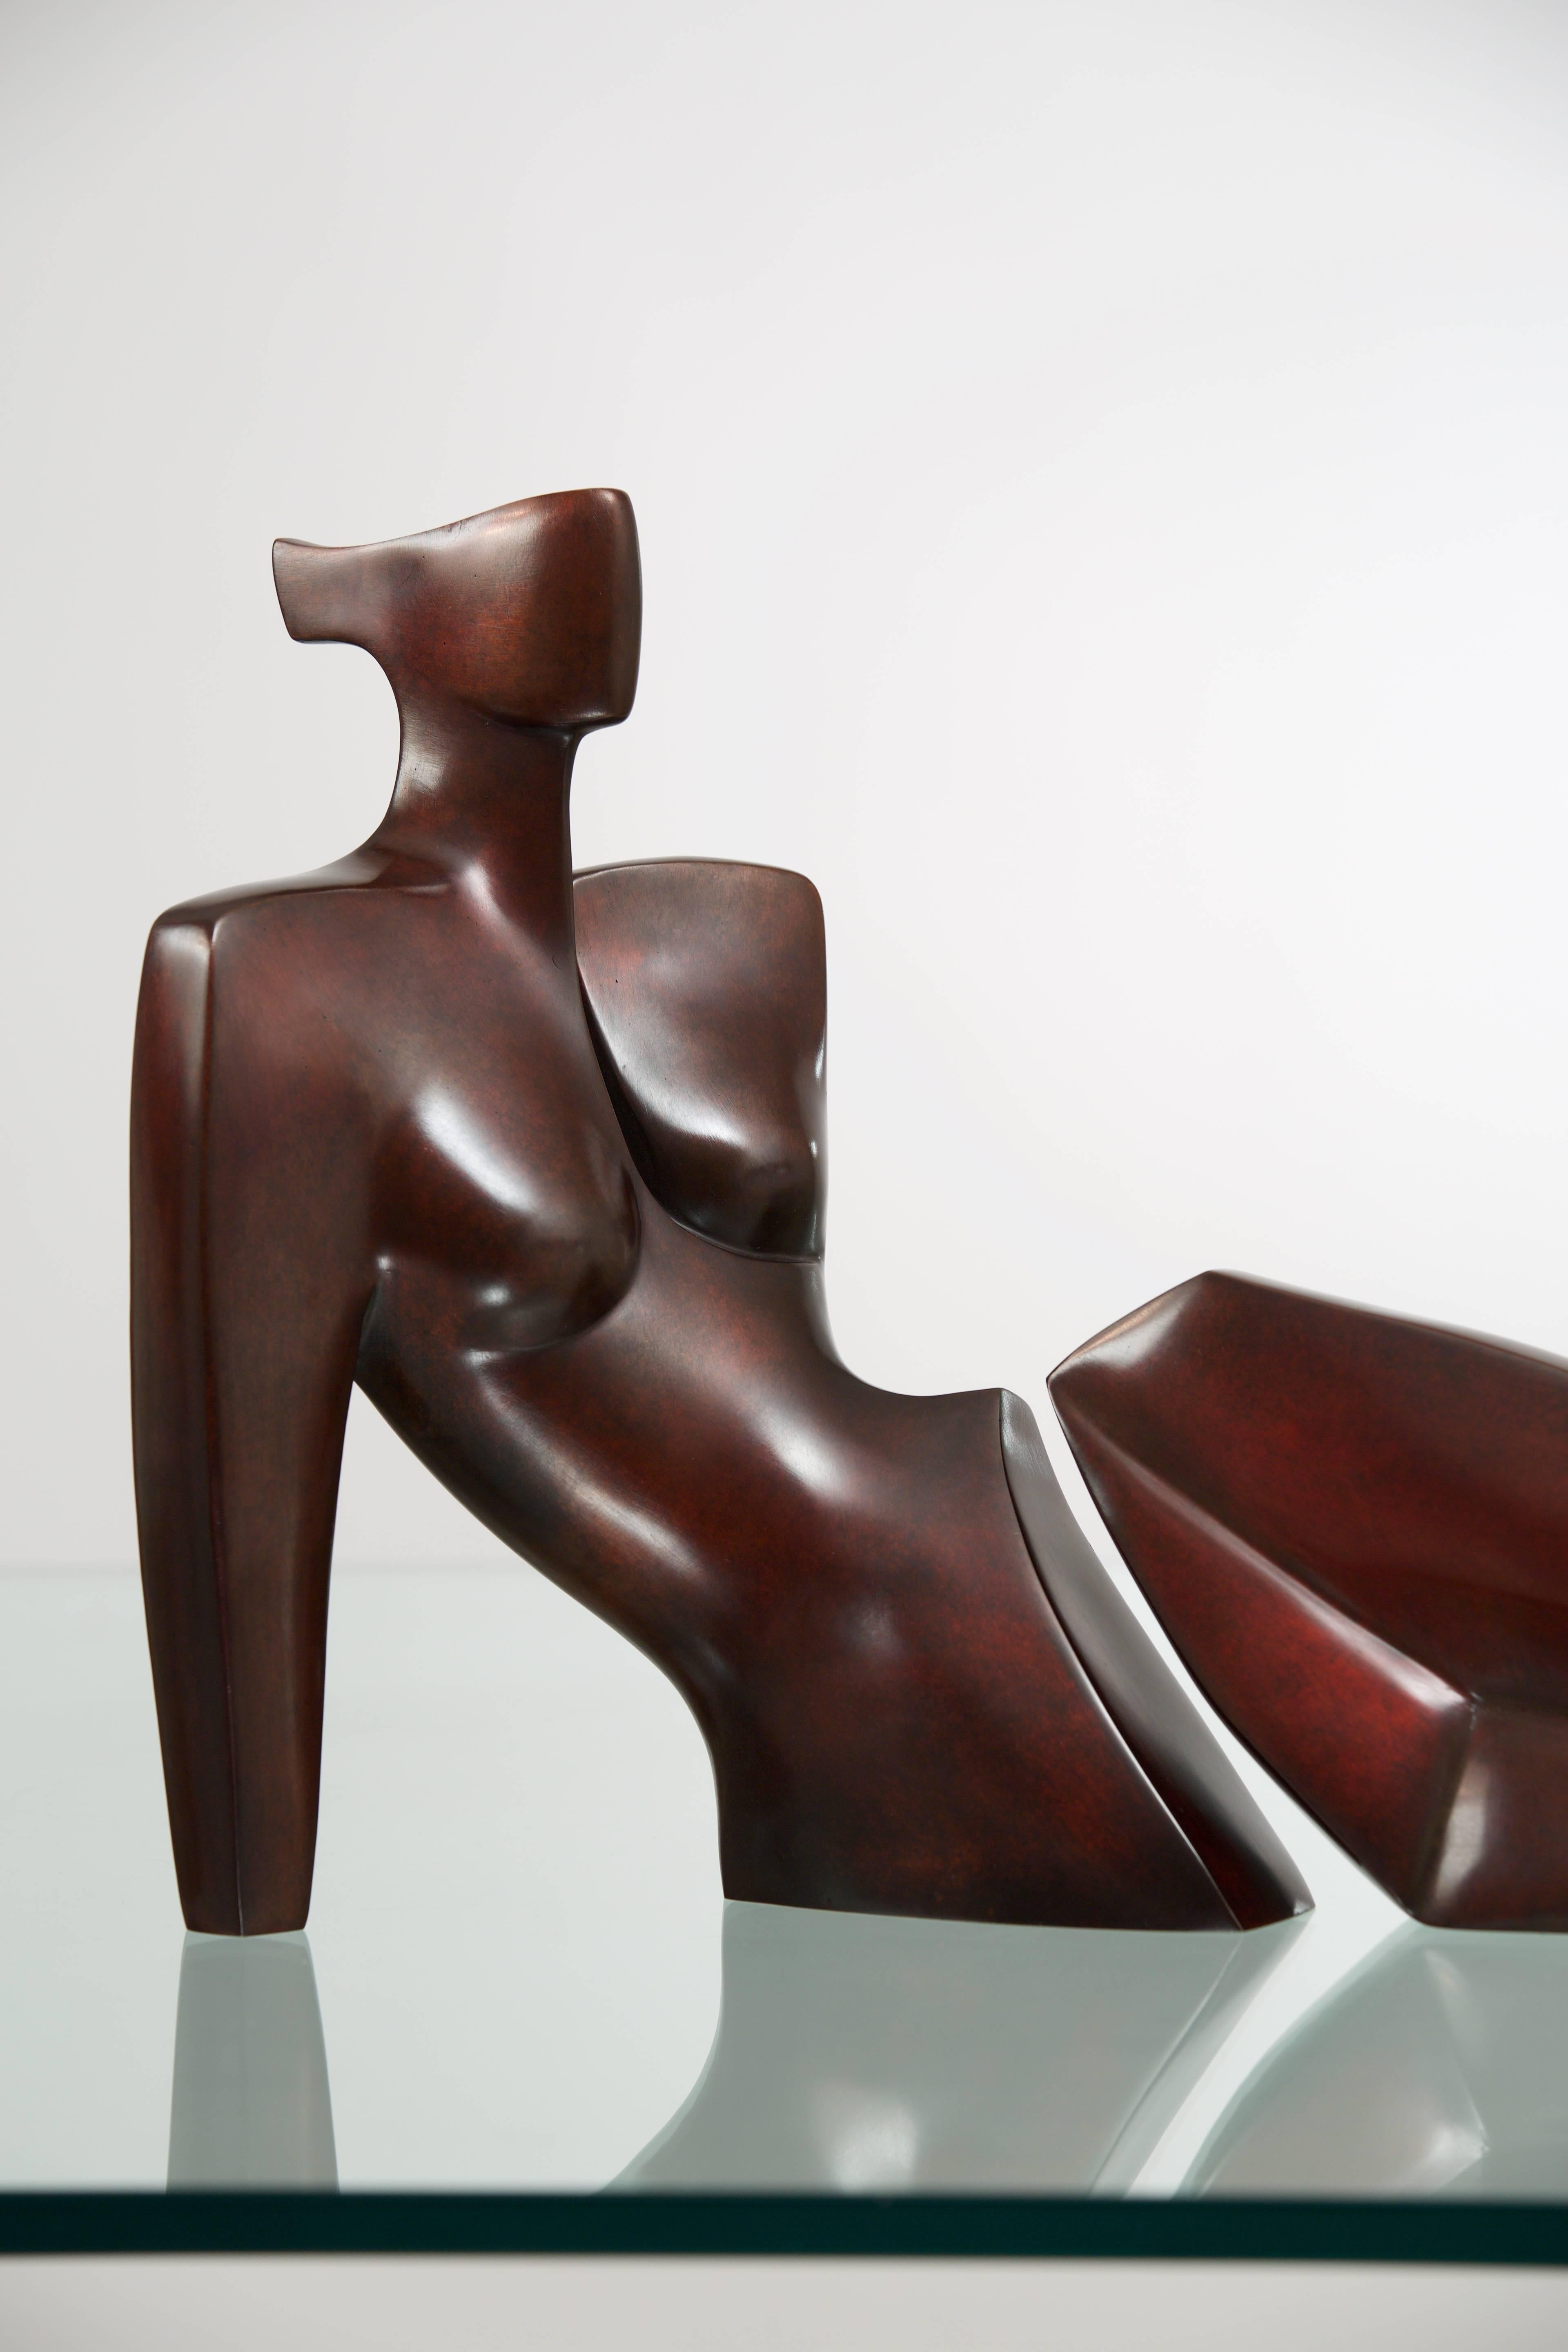 Alresha – Sculpture von Annette Jalilova